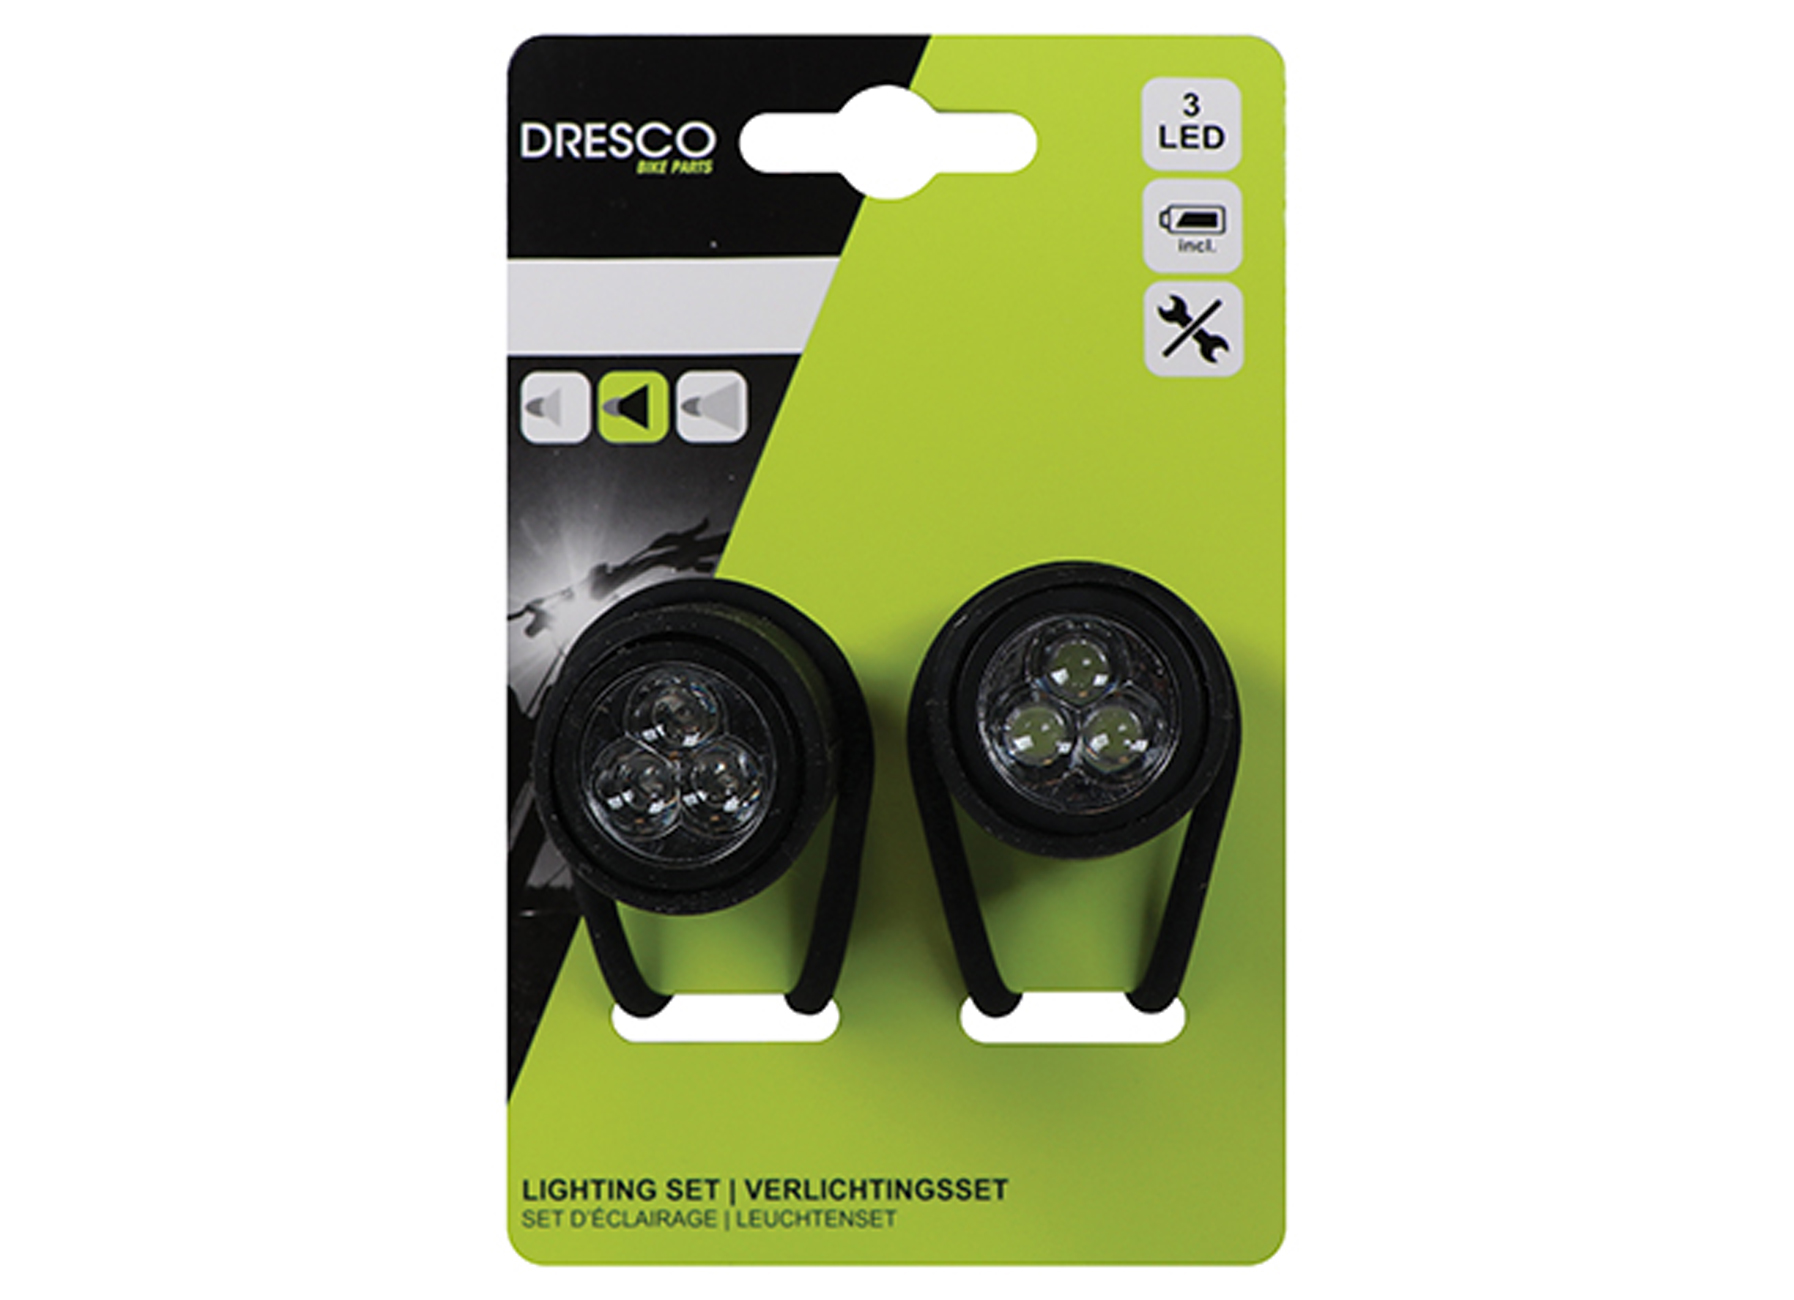 DRESCO LED VERLICHTINGSSET 3 LEDS